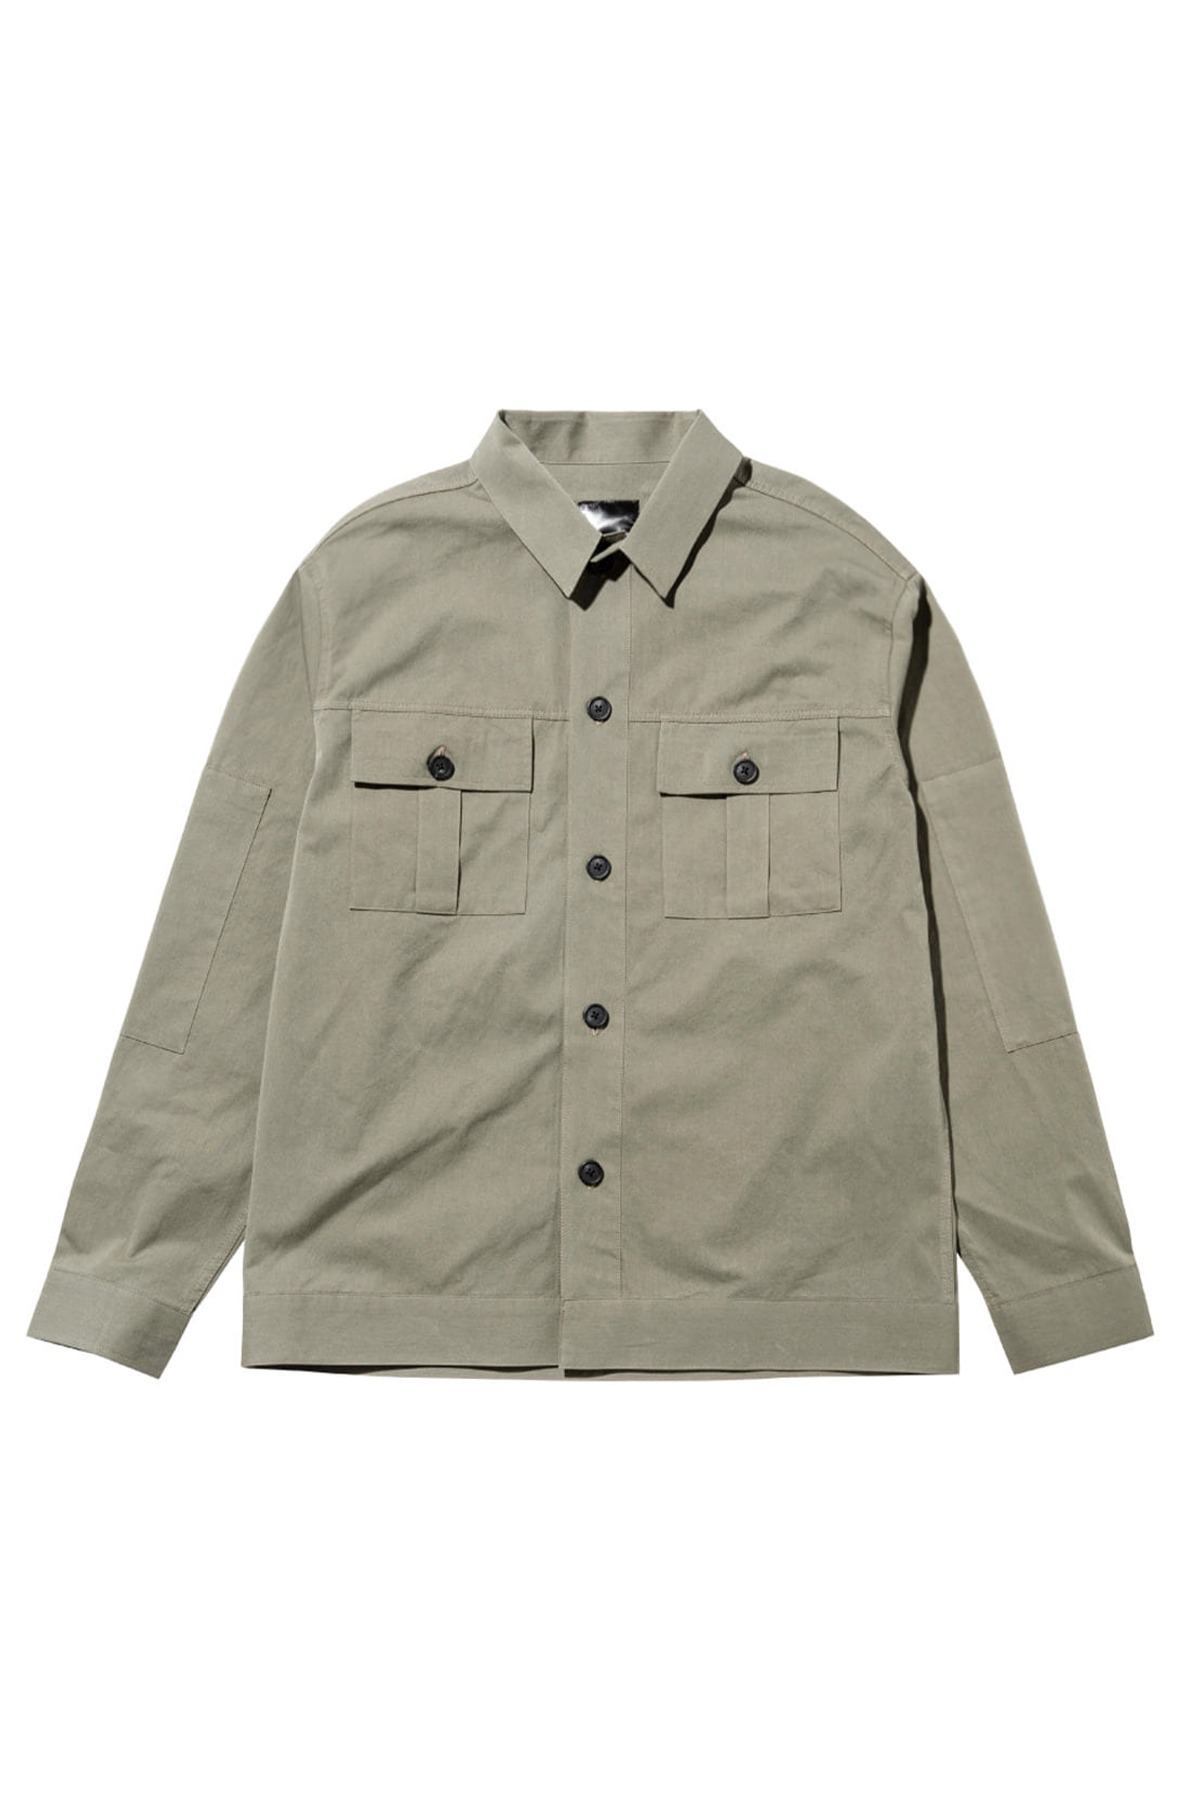 #jp37 Fatigue pocket shirt jacket (kakhi)